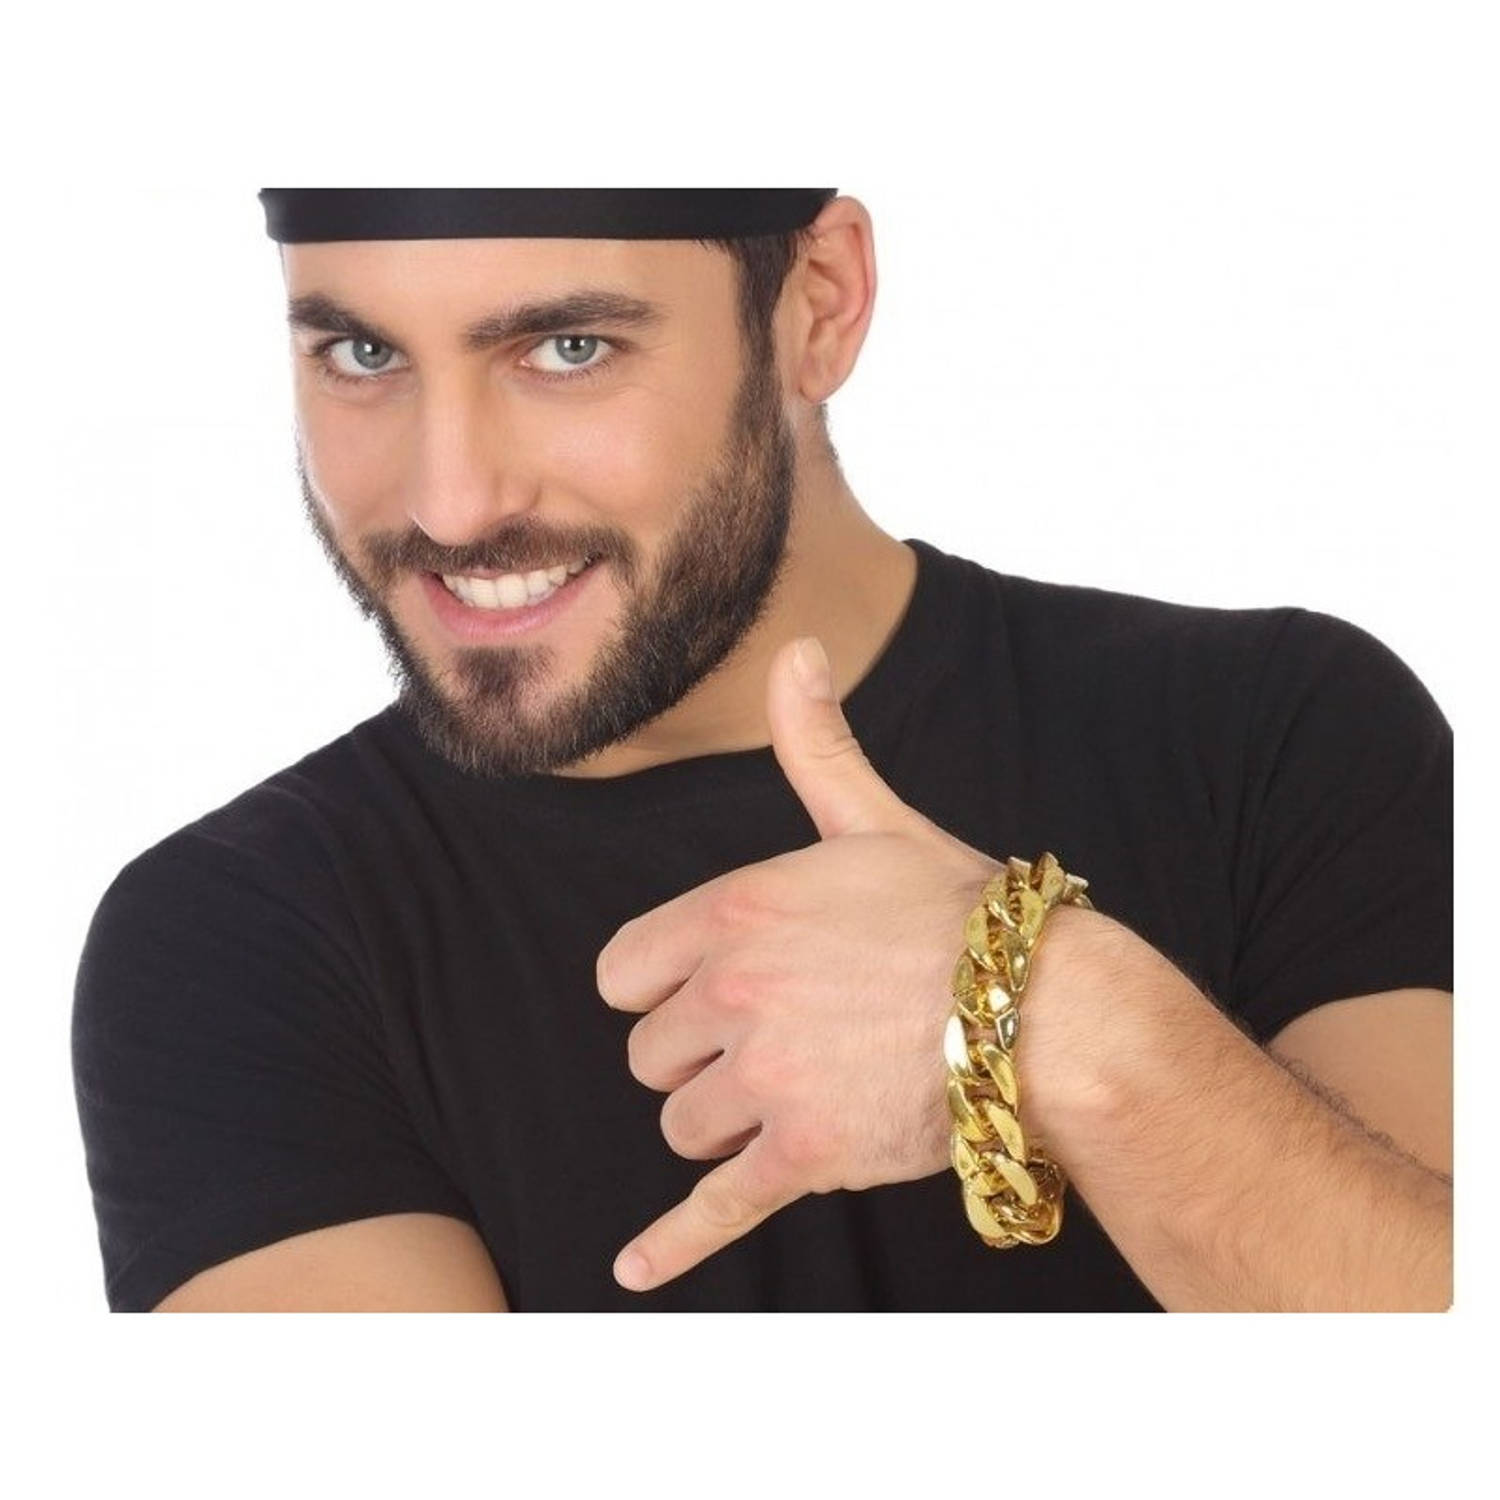 Gouden bling bling schakelarmband met grove schakels - verkleed accessoire - rapper/hiphop/pimp kostuum